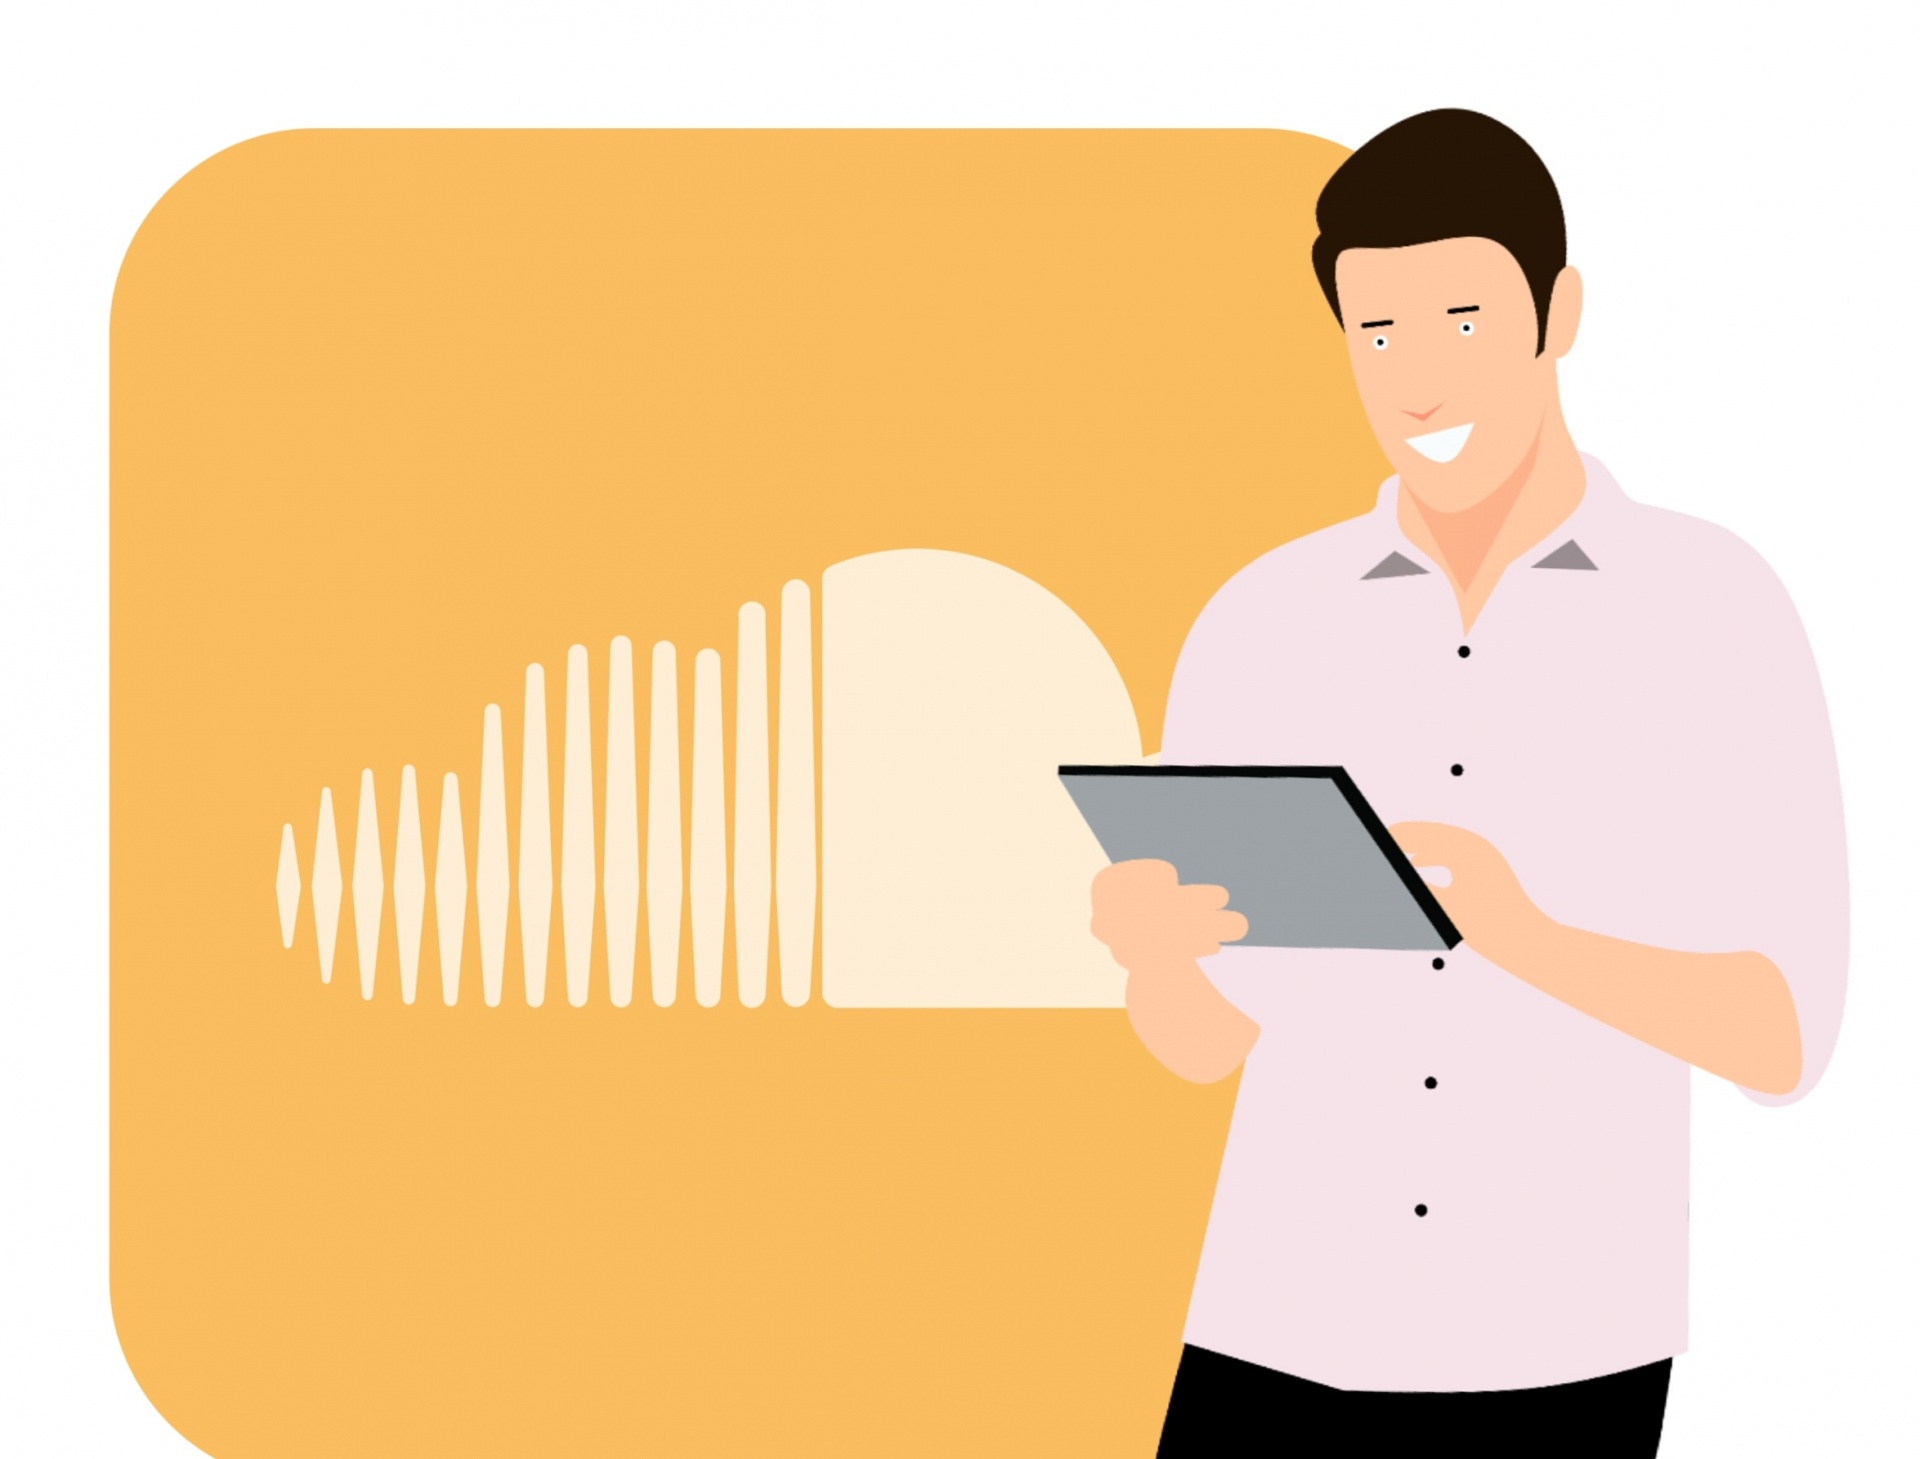 Soundcloud, Music, Application